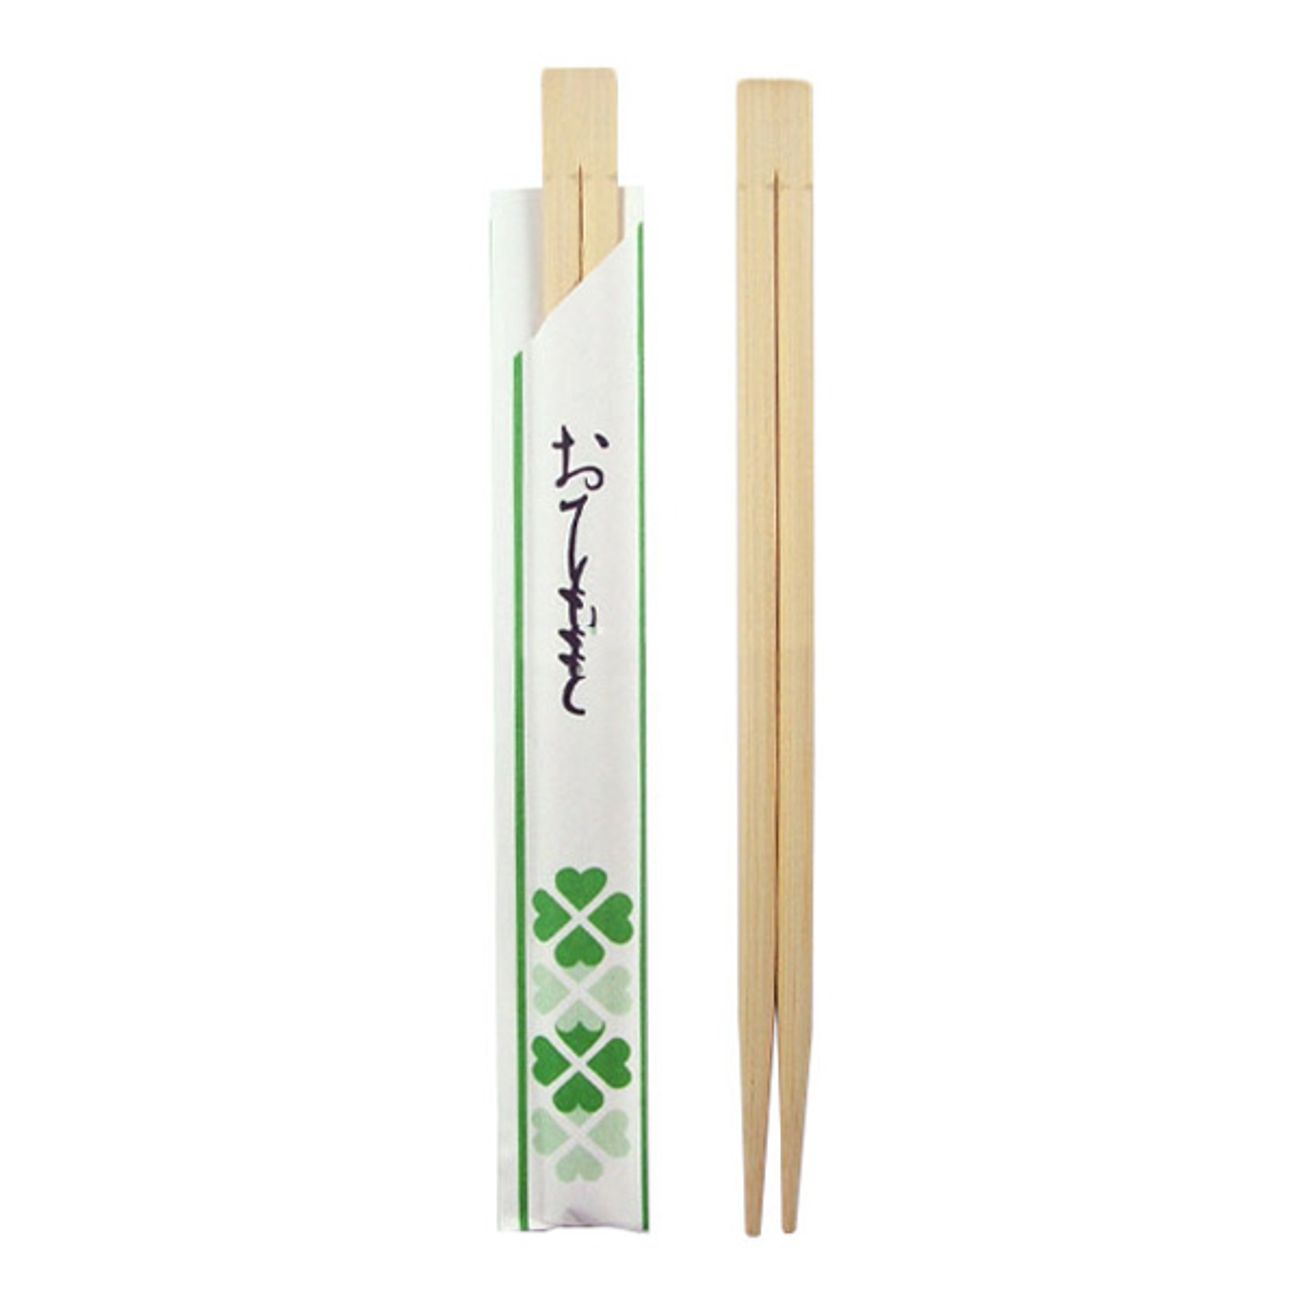 atpinnar-i-bambu-1